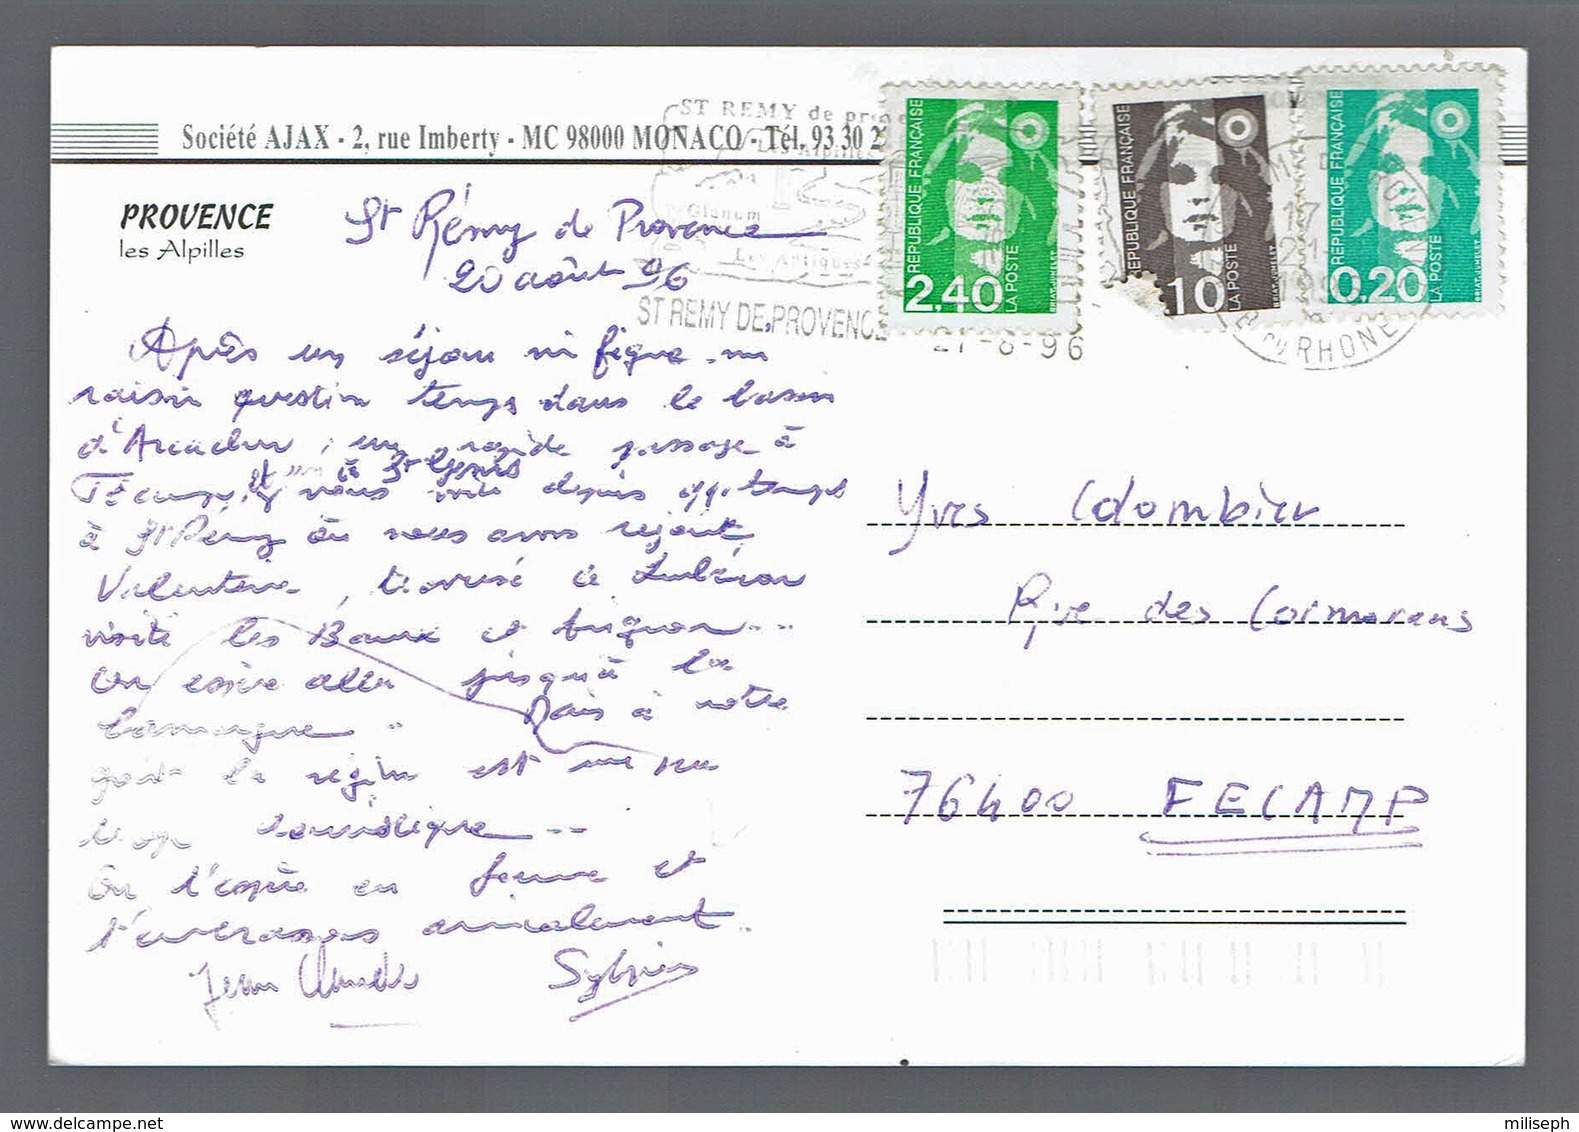 PROVENCE - Les Alpilles - 1996 - Cachet Saint-Rémy-de-Provence - Editeur: Société AJAX - Monaco -     (4744) - Saint-Remy-de-Provence